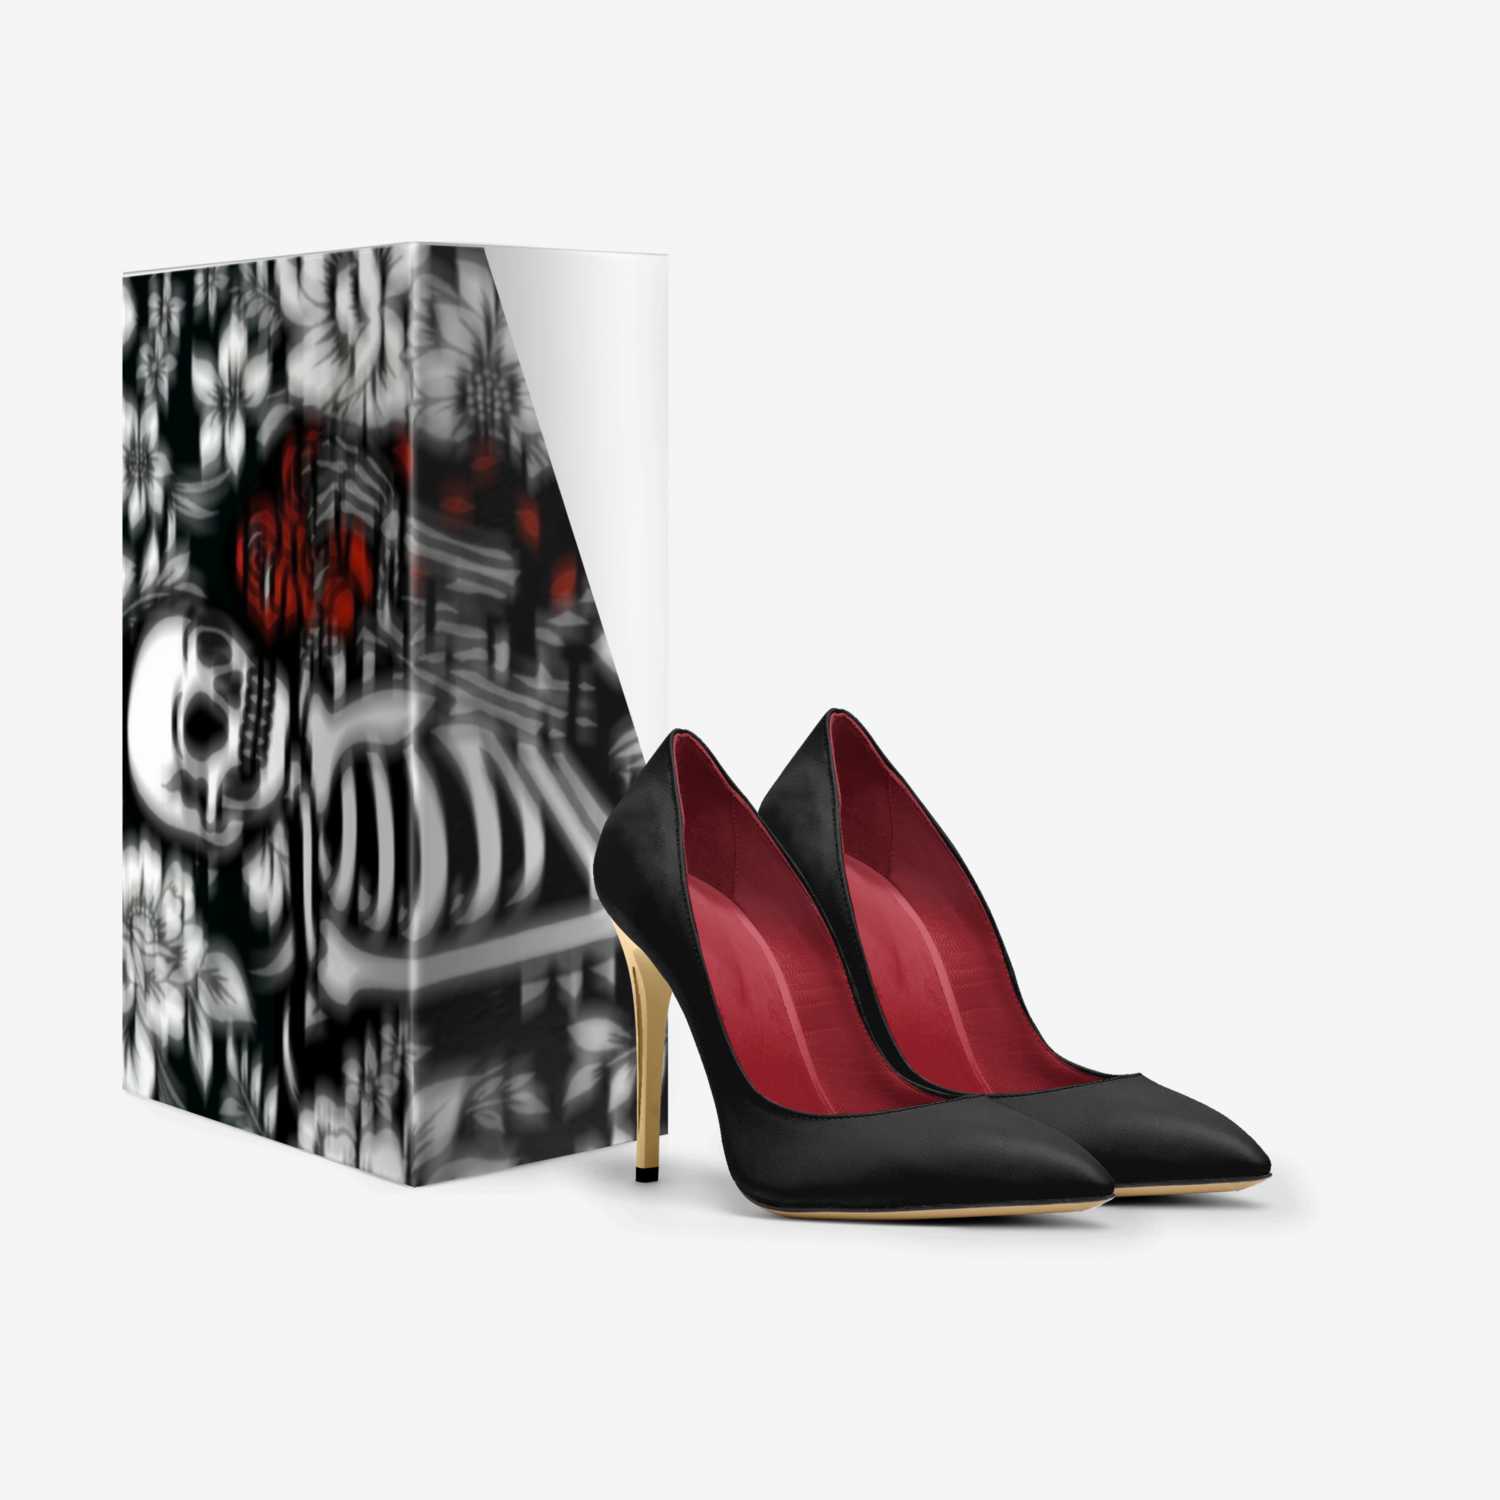 Killa custom made in Italy shoes by Sabrina Boerner | Box view